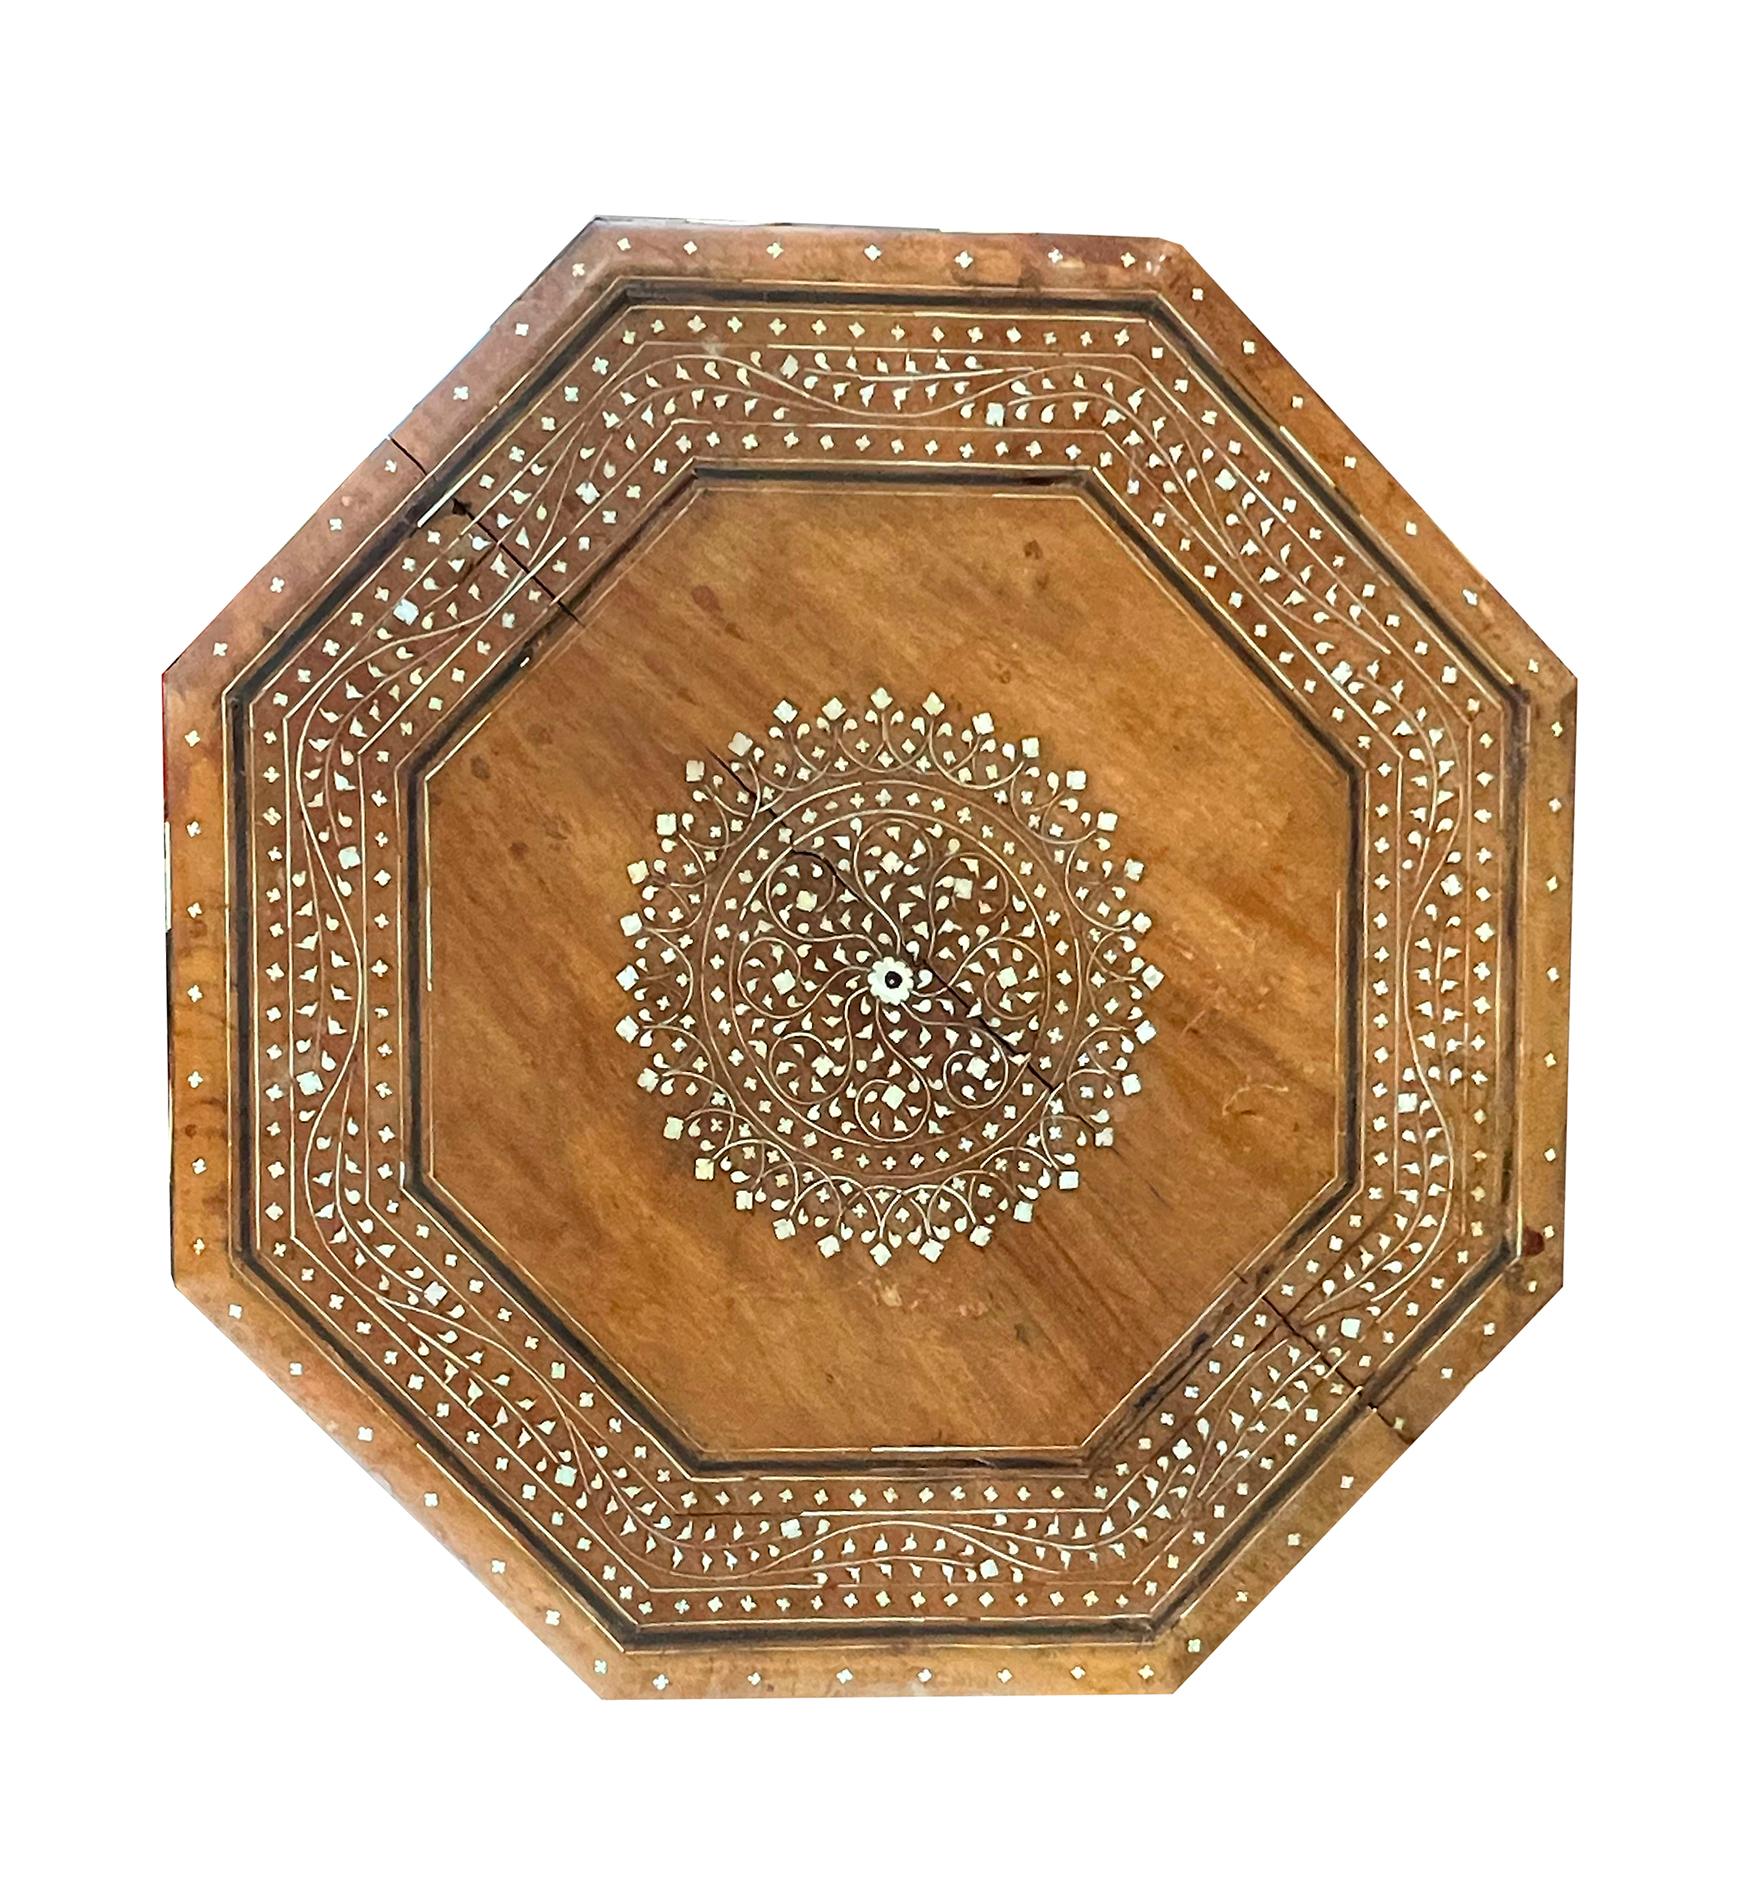 utilisées à l'origine comme tables à thé de voyage pour les Britanniques en Inde ; le plateau octogonal est orné d'un médaillon central rond entouré d'une bordure de vignes sinueuses ; il repose sur une base articulée avec des écoinçons en arabesque